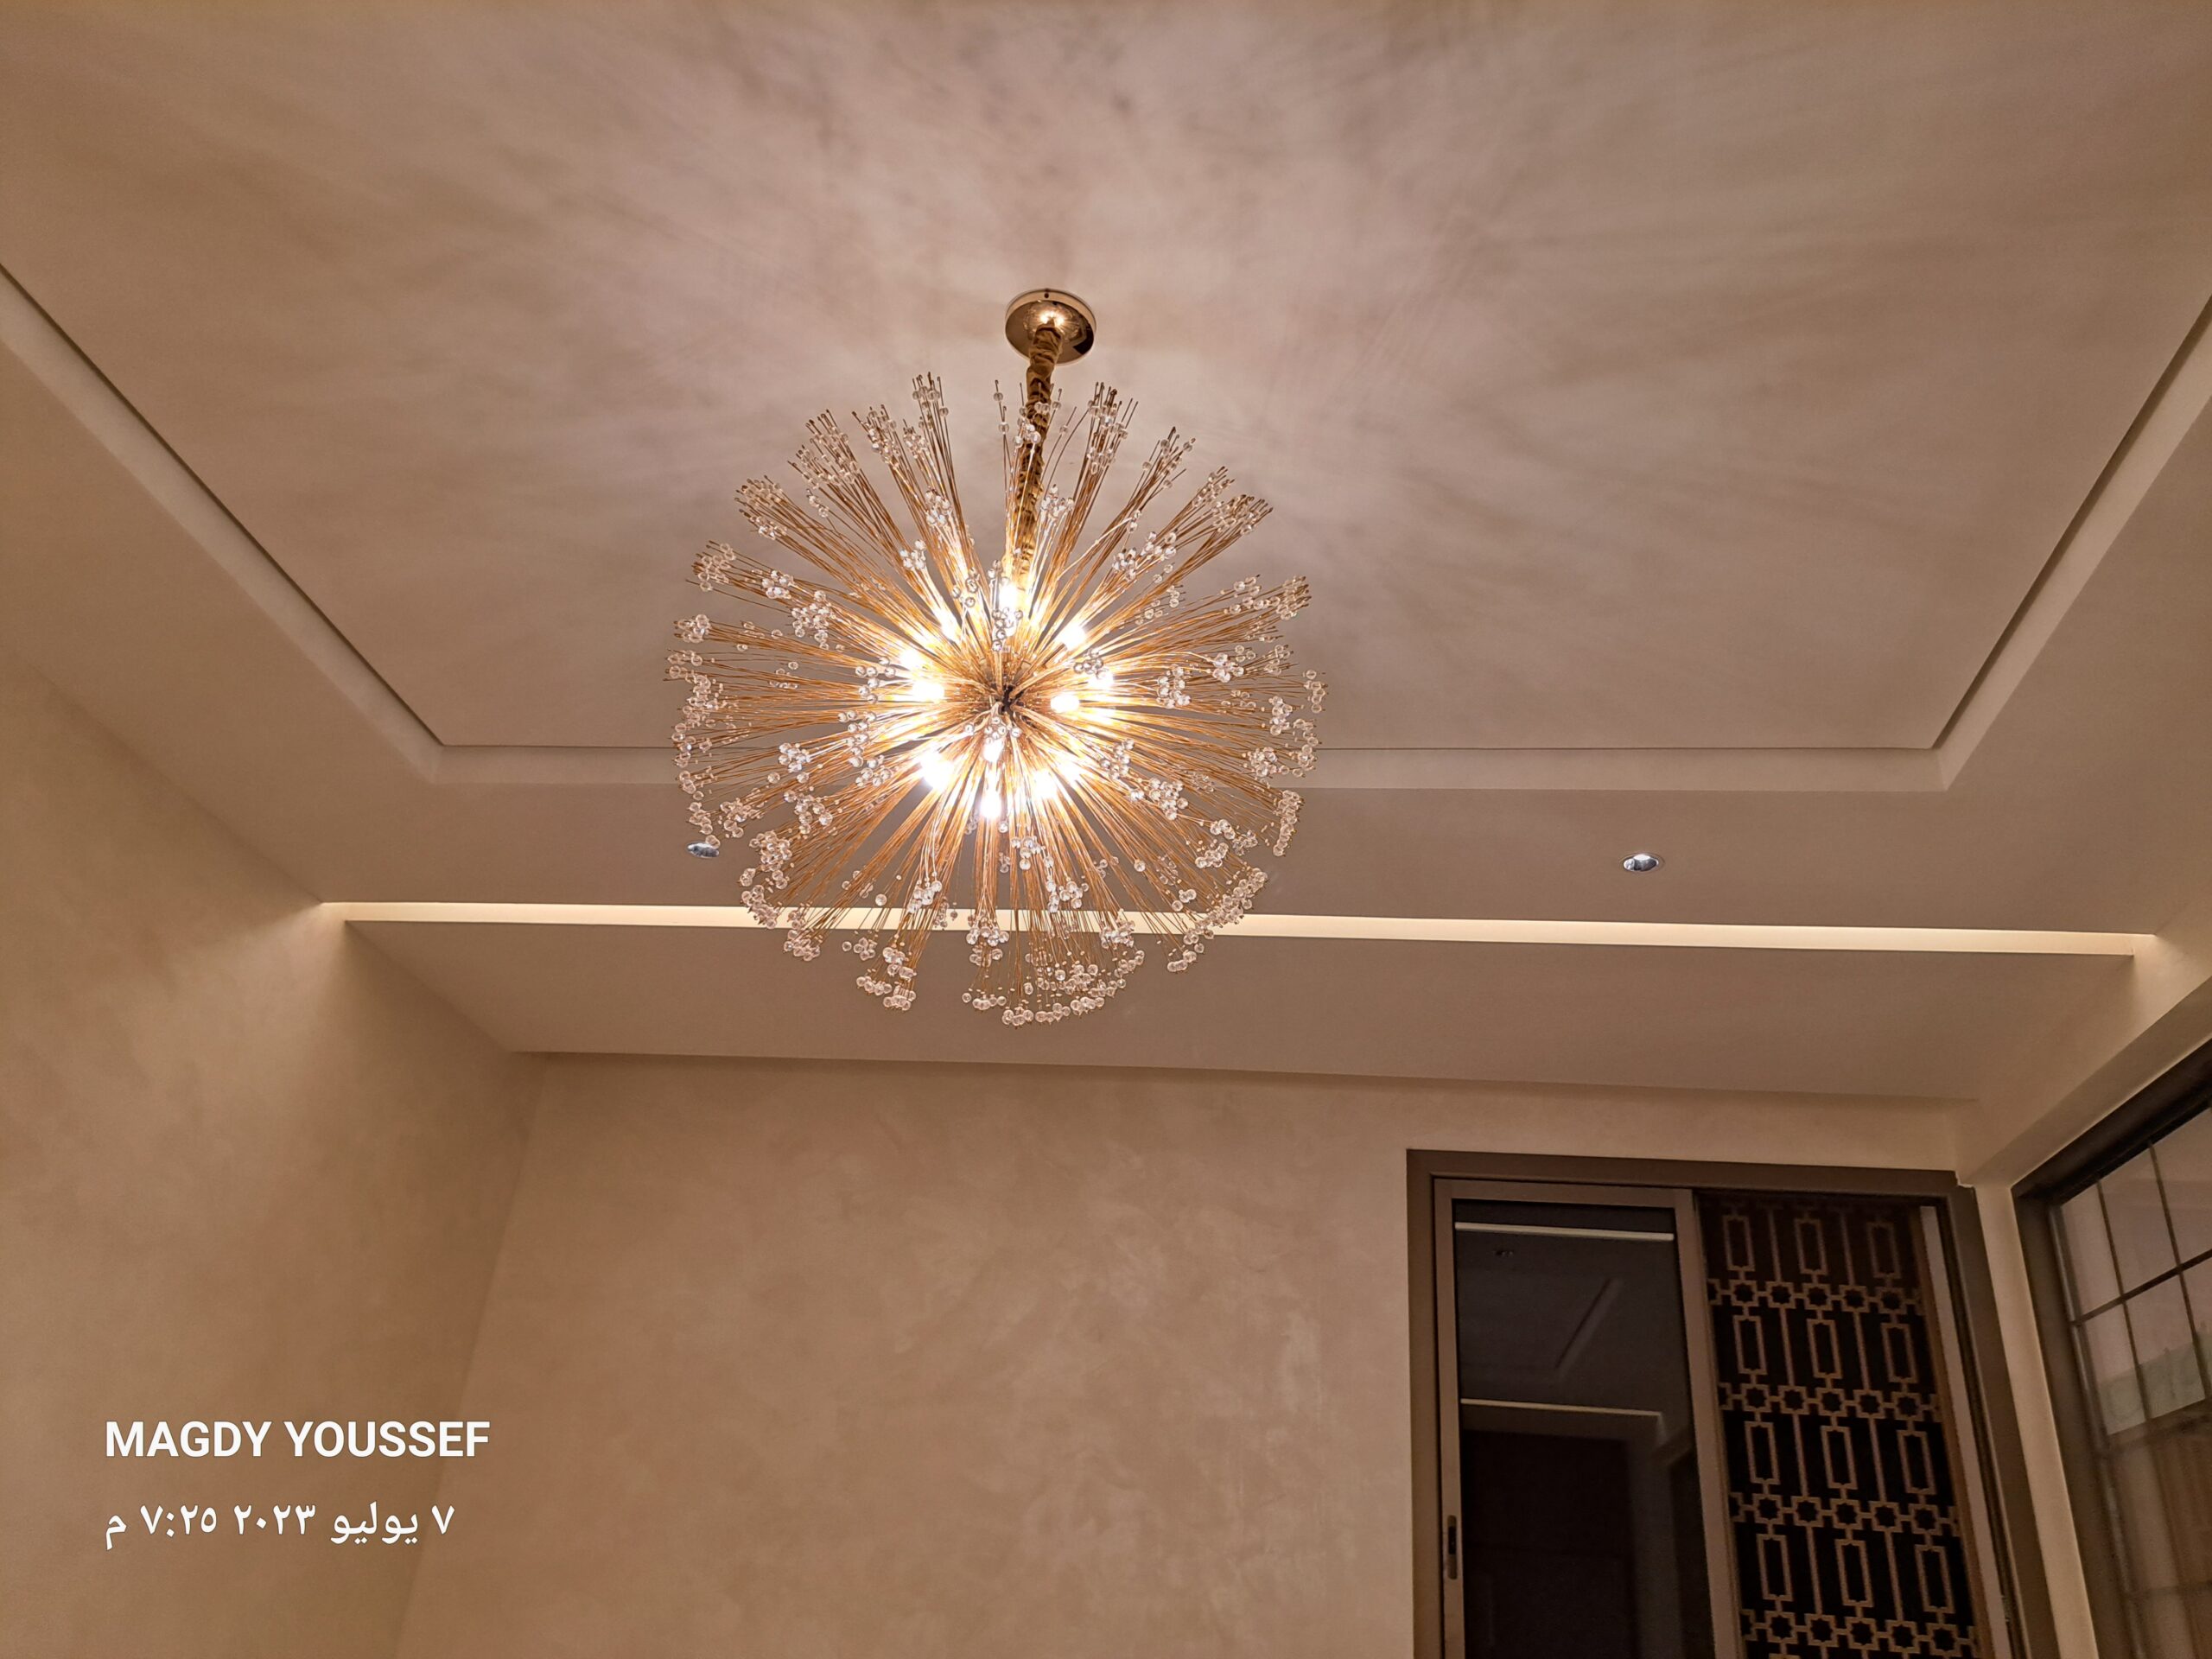 كهربائي منازل شمال الرياض